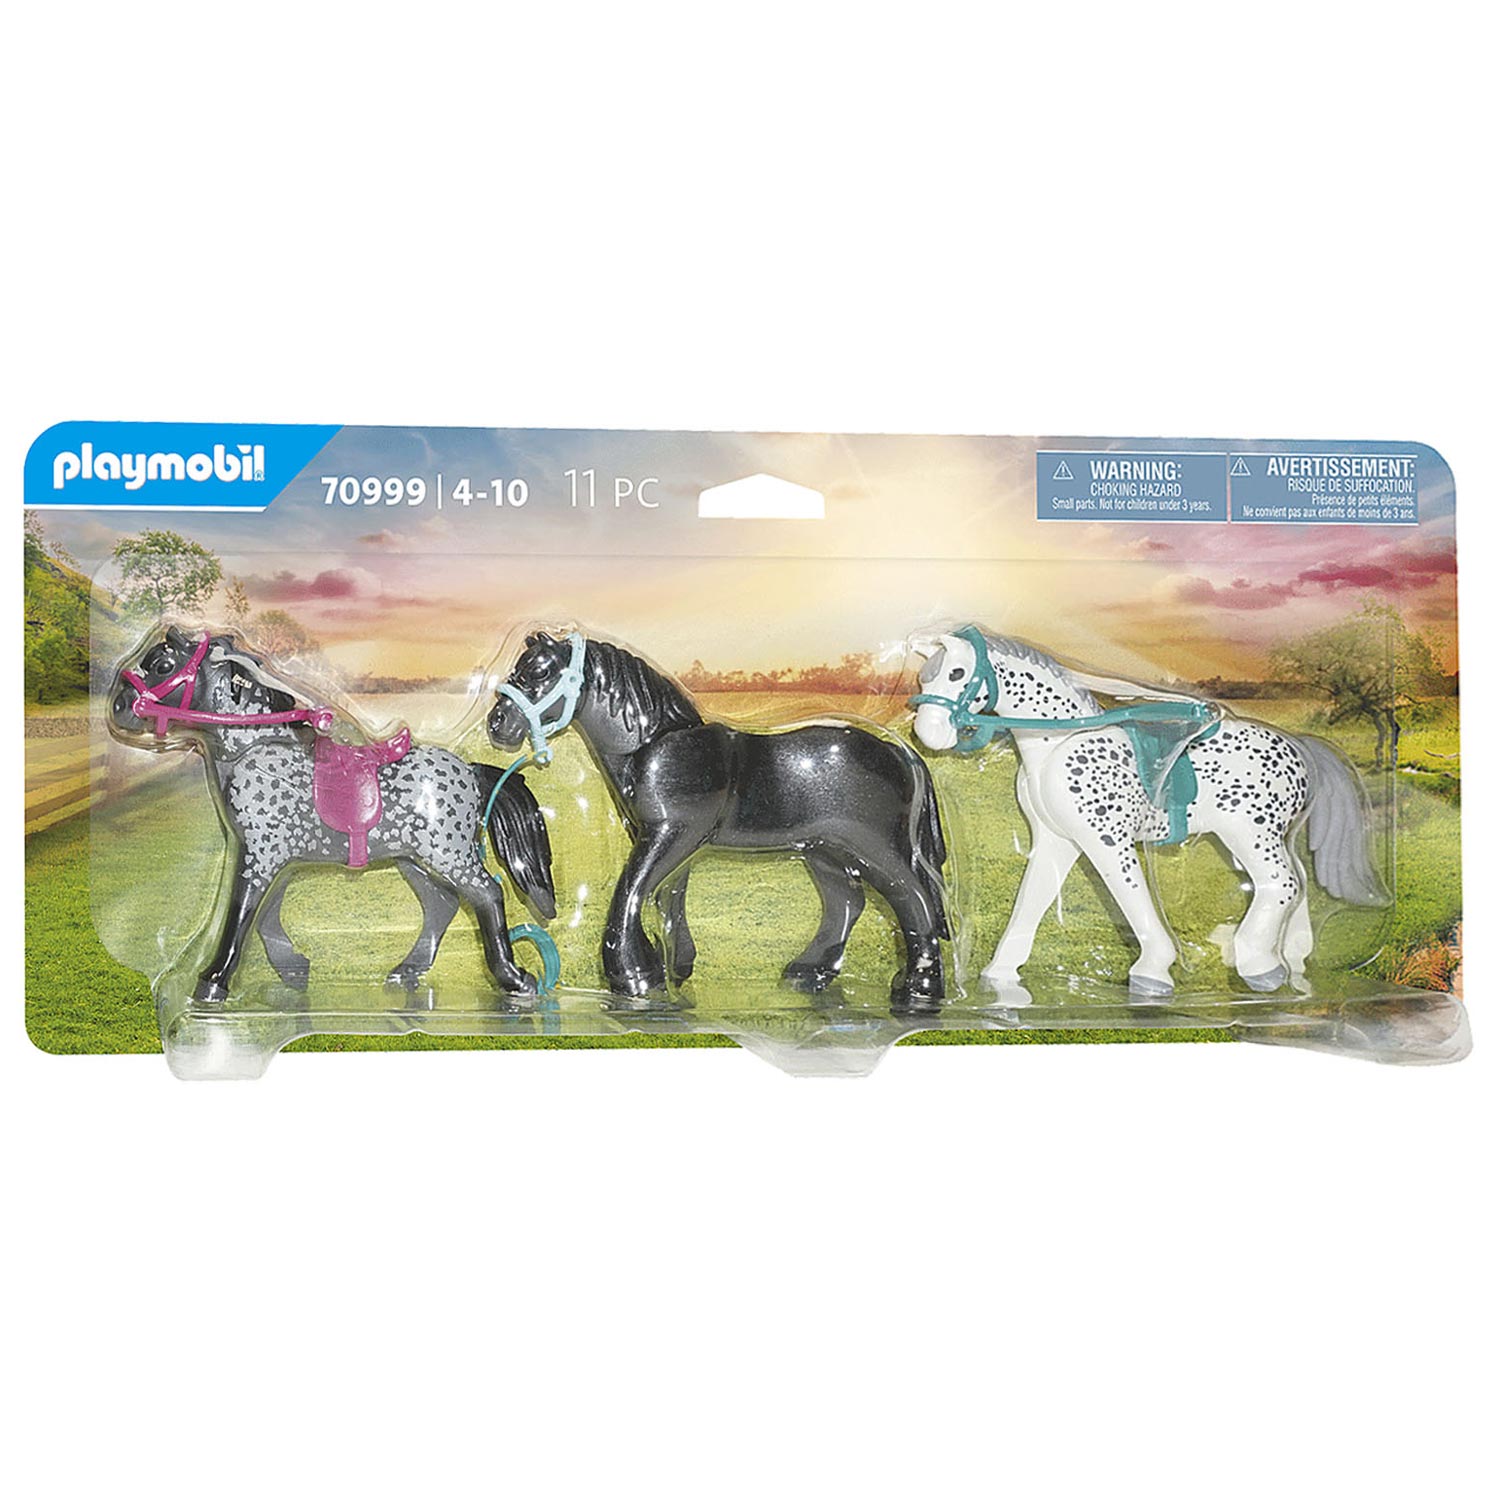 Ensemble de chevaux Playmobil Country, 3 pièces. - 70999